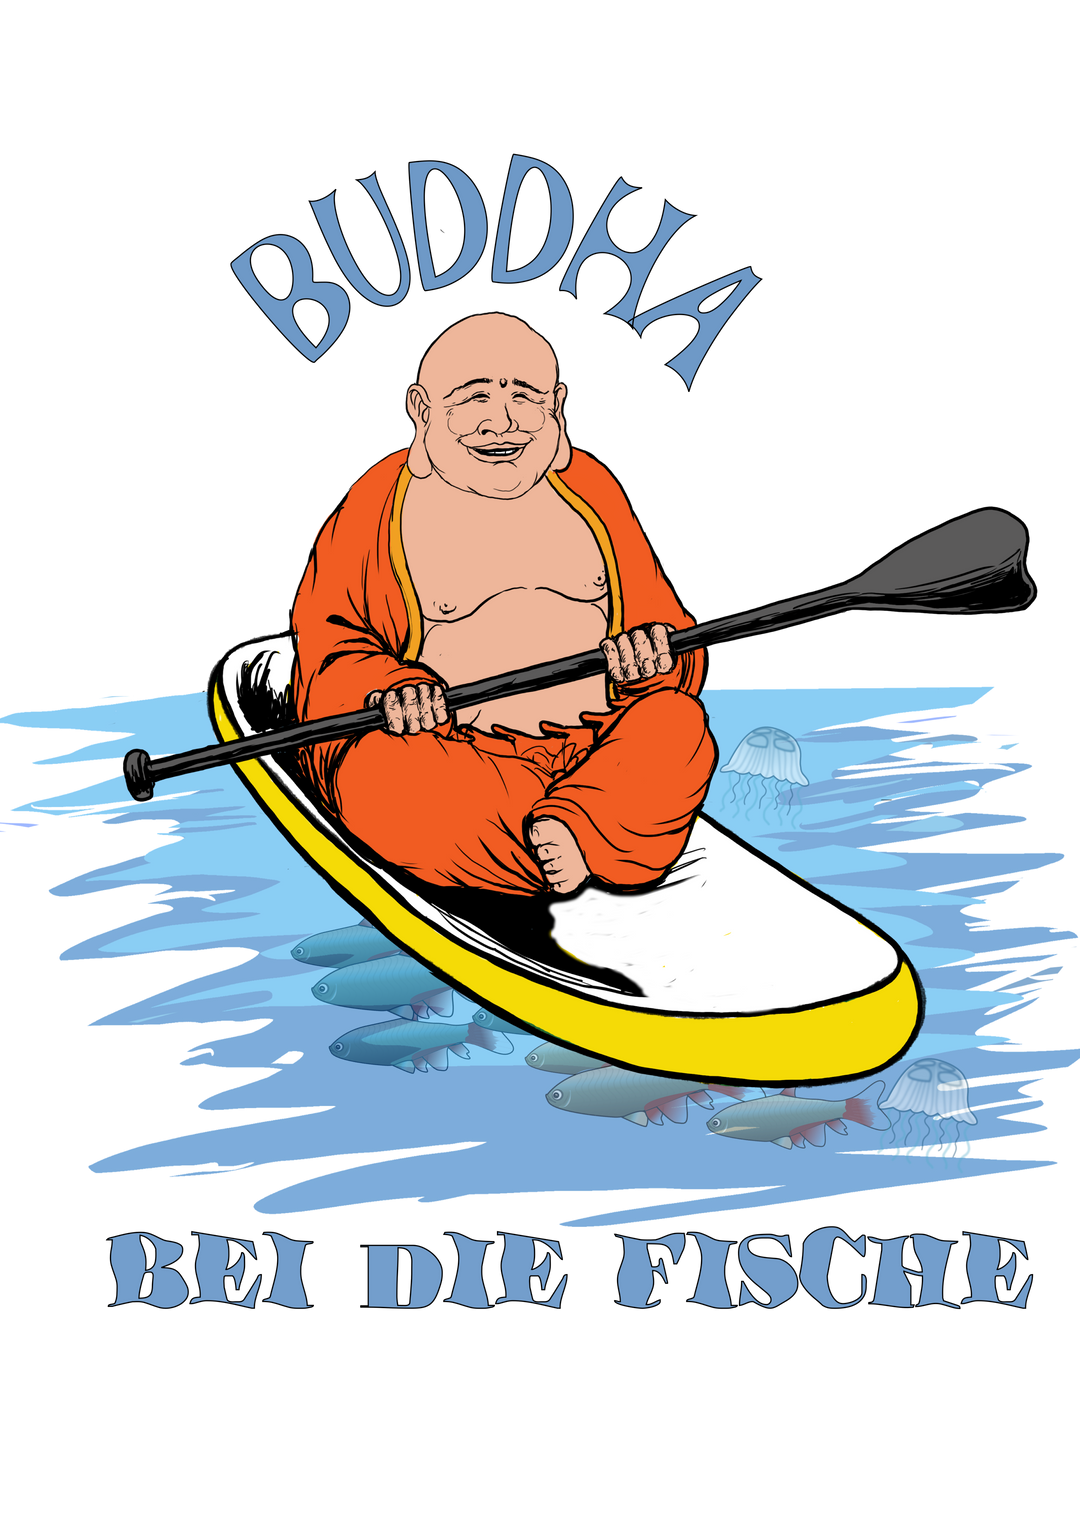 Buddha bei die Fische